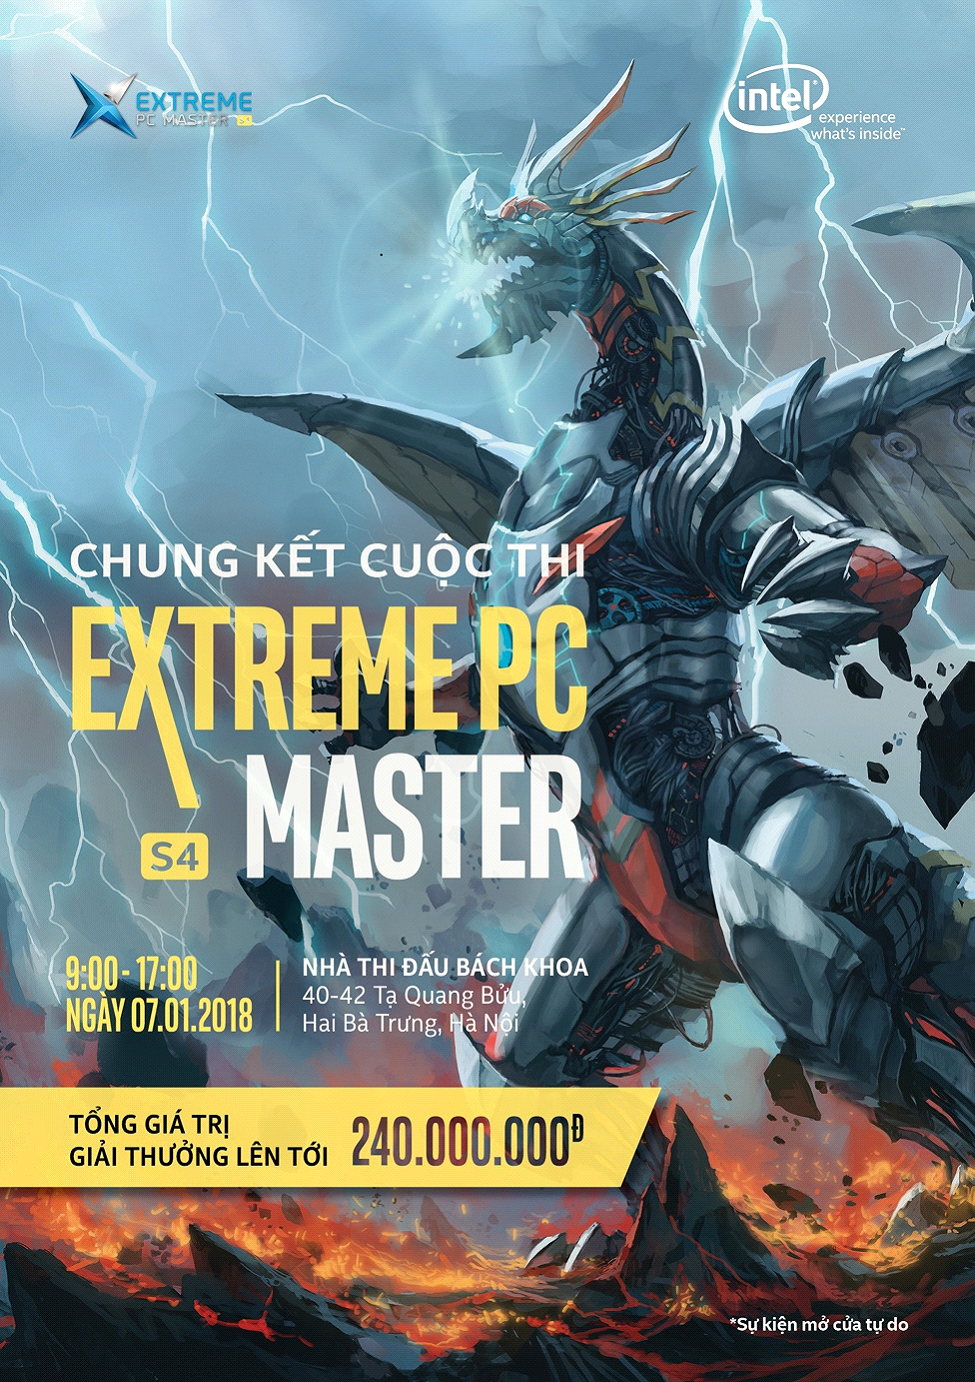 5 lý do không thể bỏ lỡ sự kiện Extreme PC Master mùa 4 tại Hà Nội